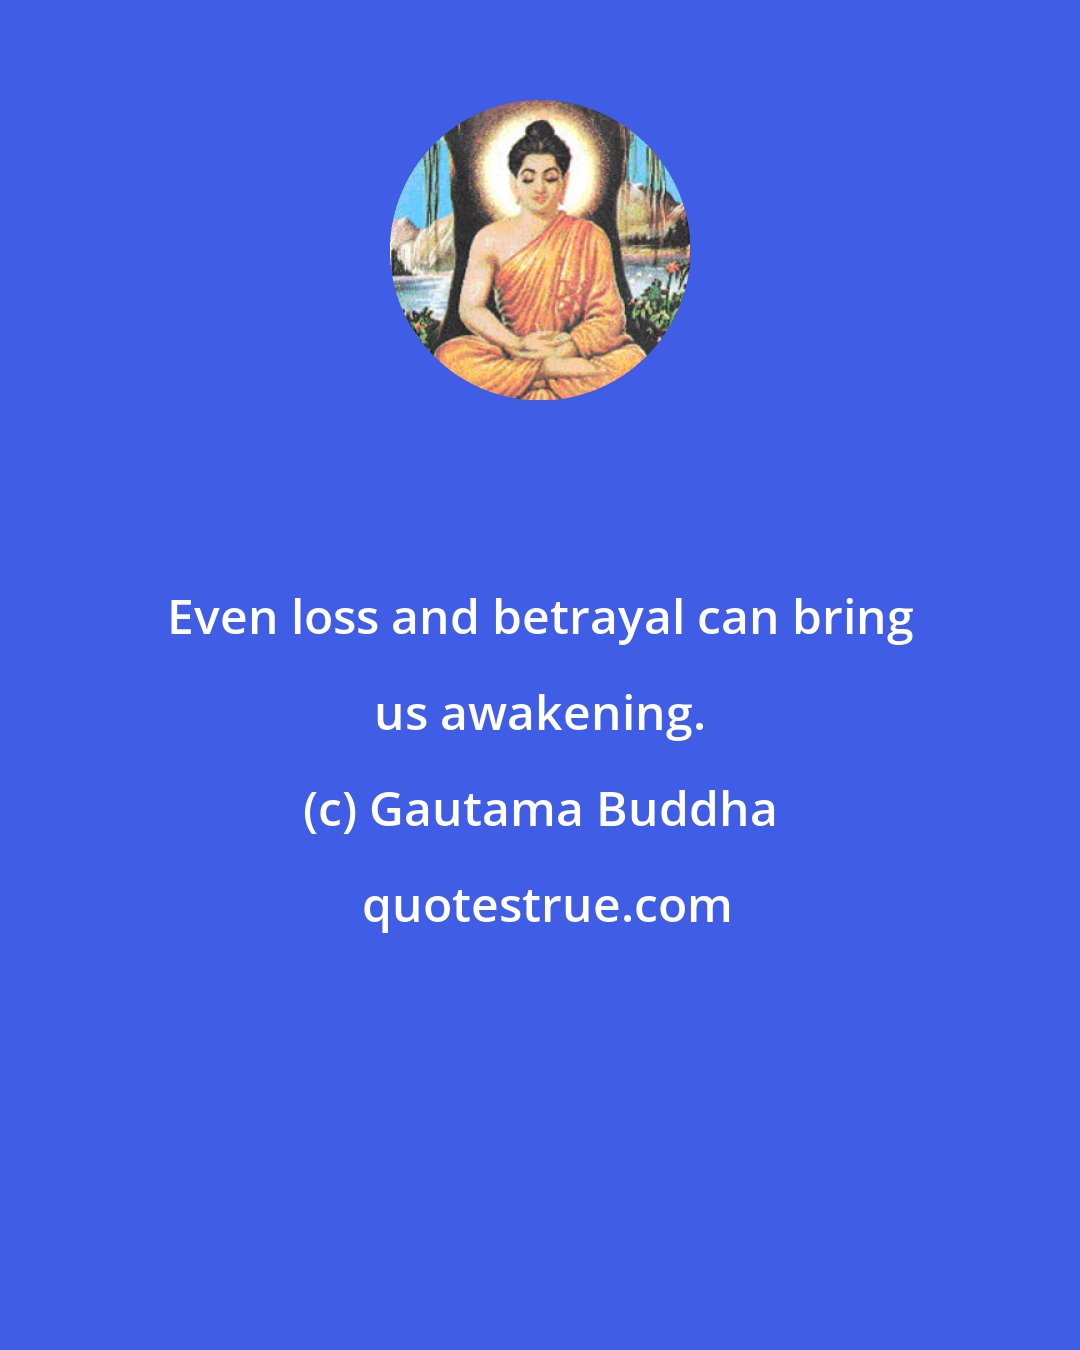 Gautama Buddha: Even loss and betrayal can bring us awakening.